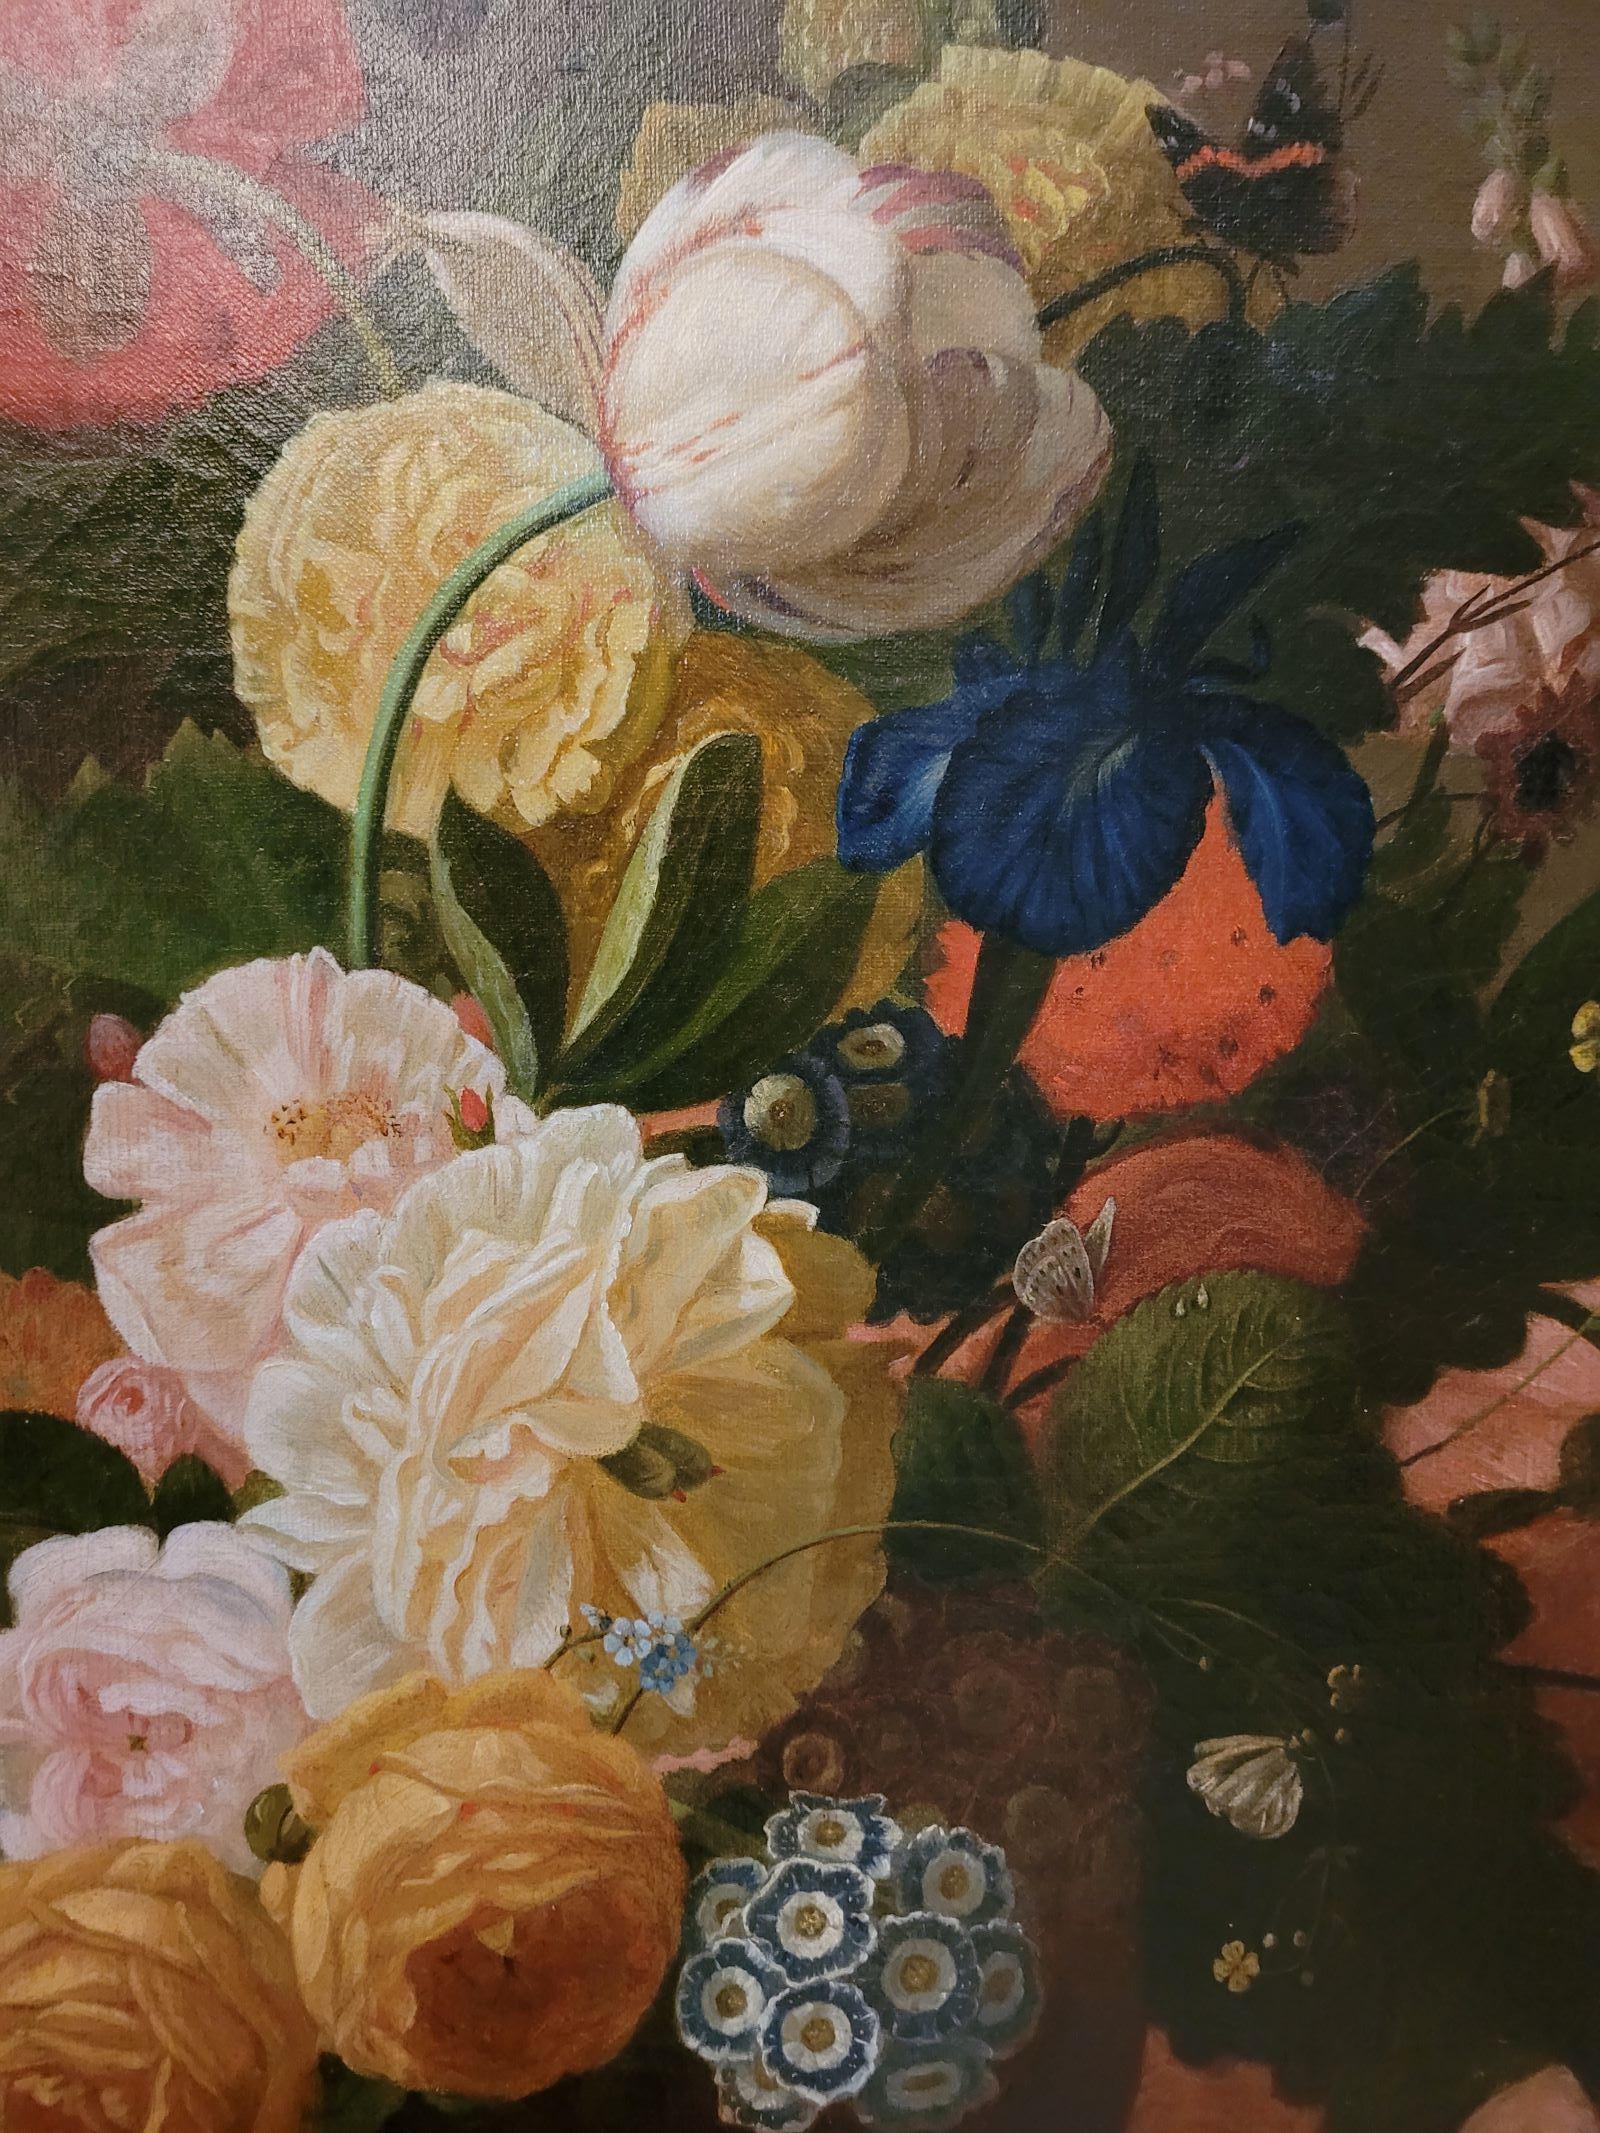 Ce tableau peint en 1857 représente un magnifique bouquet de fleurs dans le goût hollandais du 17ème siècle.
Dimensions avec cadre 72x85 cm
1 restauration en bas à droite
Cadre en bois doré d'origine

Ferdinand Birotheau est un peintre français né